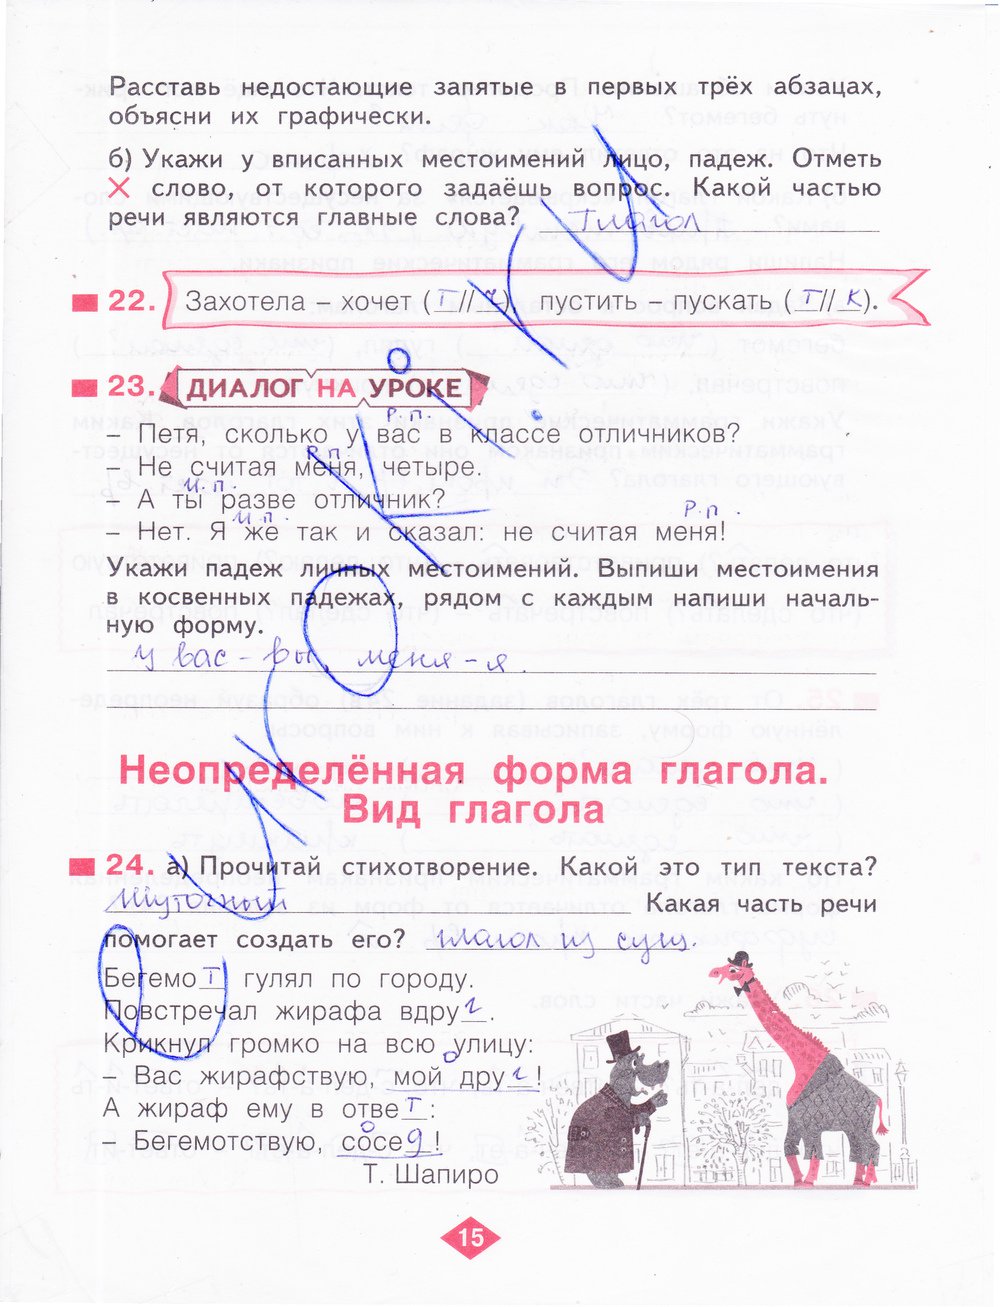 гдз 4 класс рабочая тетрадь часть 2 страница 15 русский язык Нечаева, Воскресенская